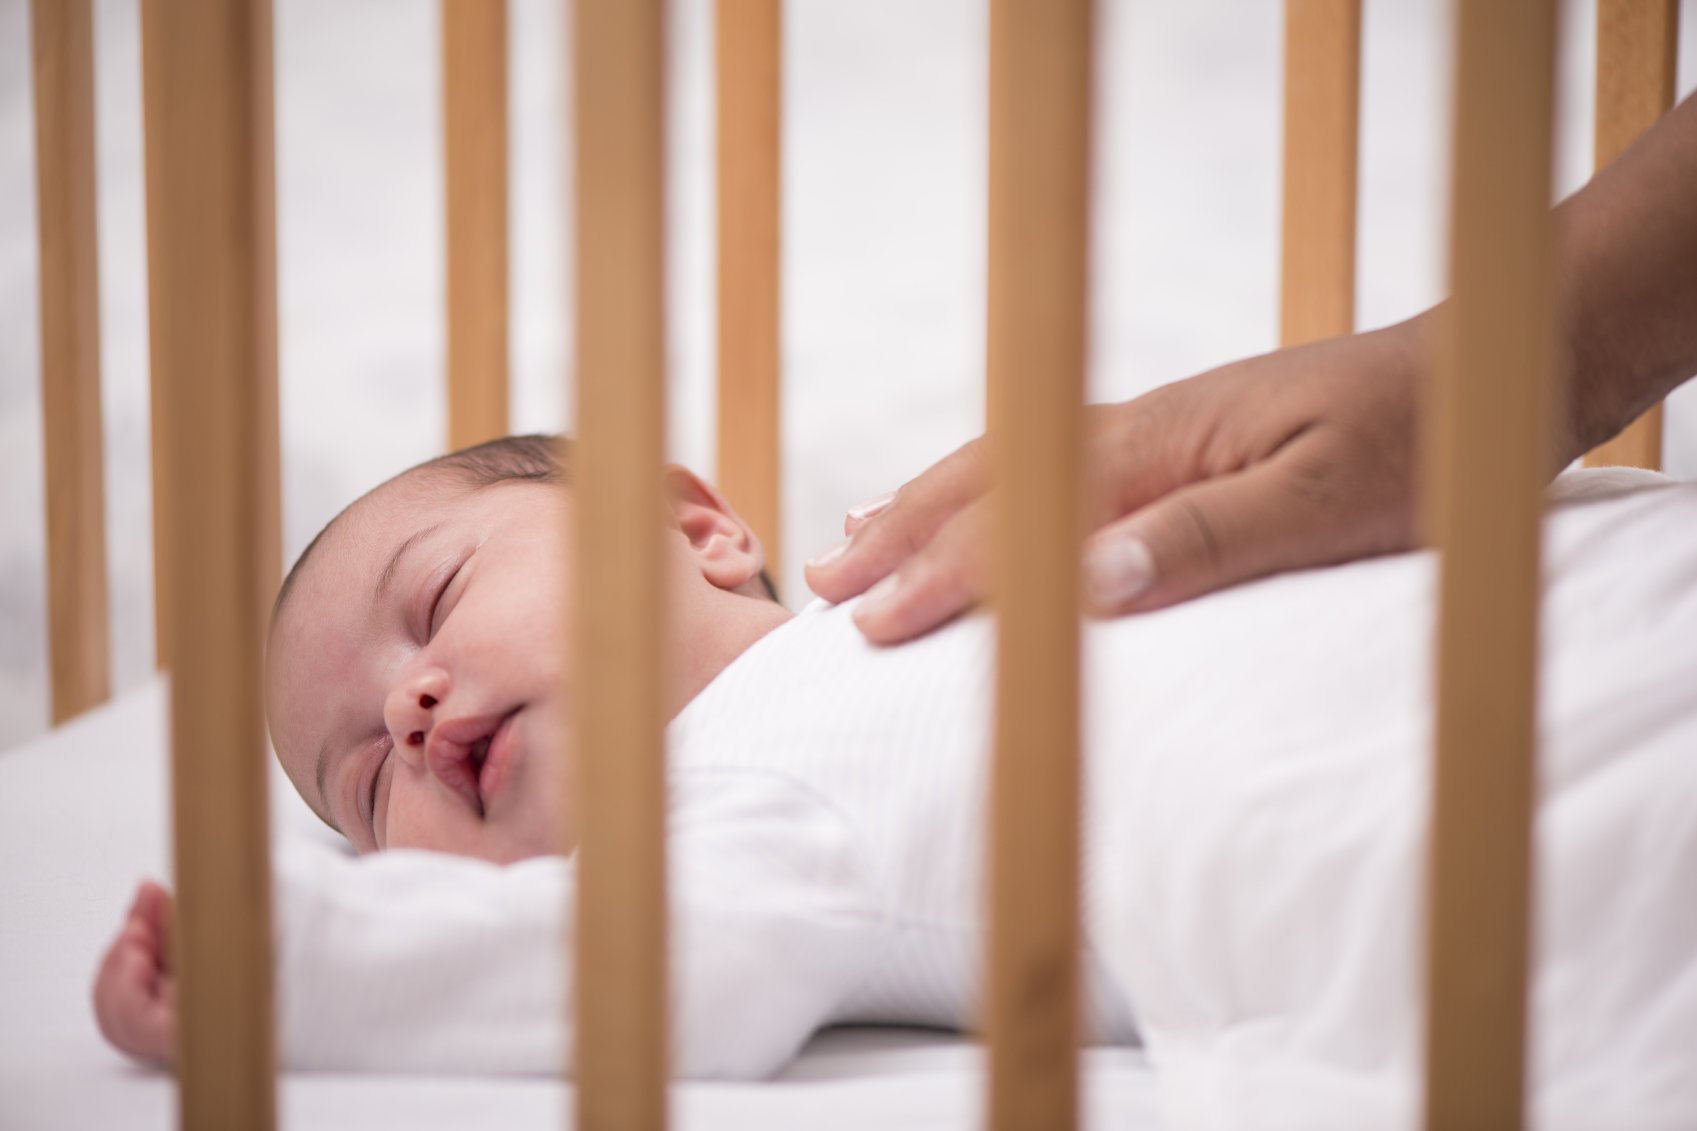 sleeping crib for babies